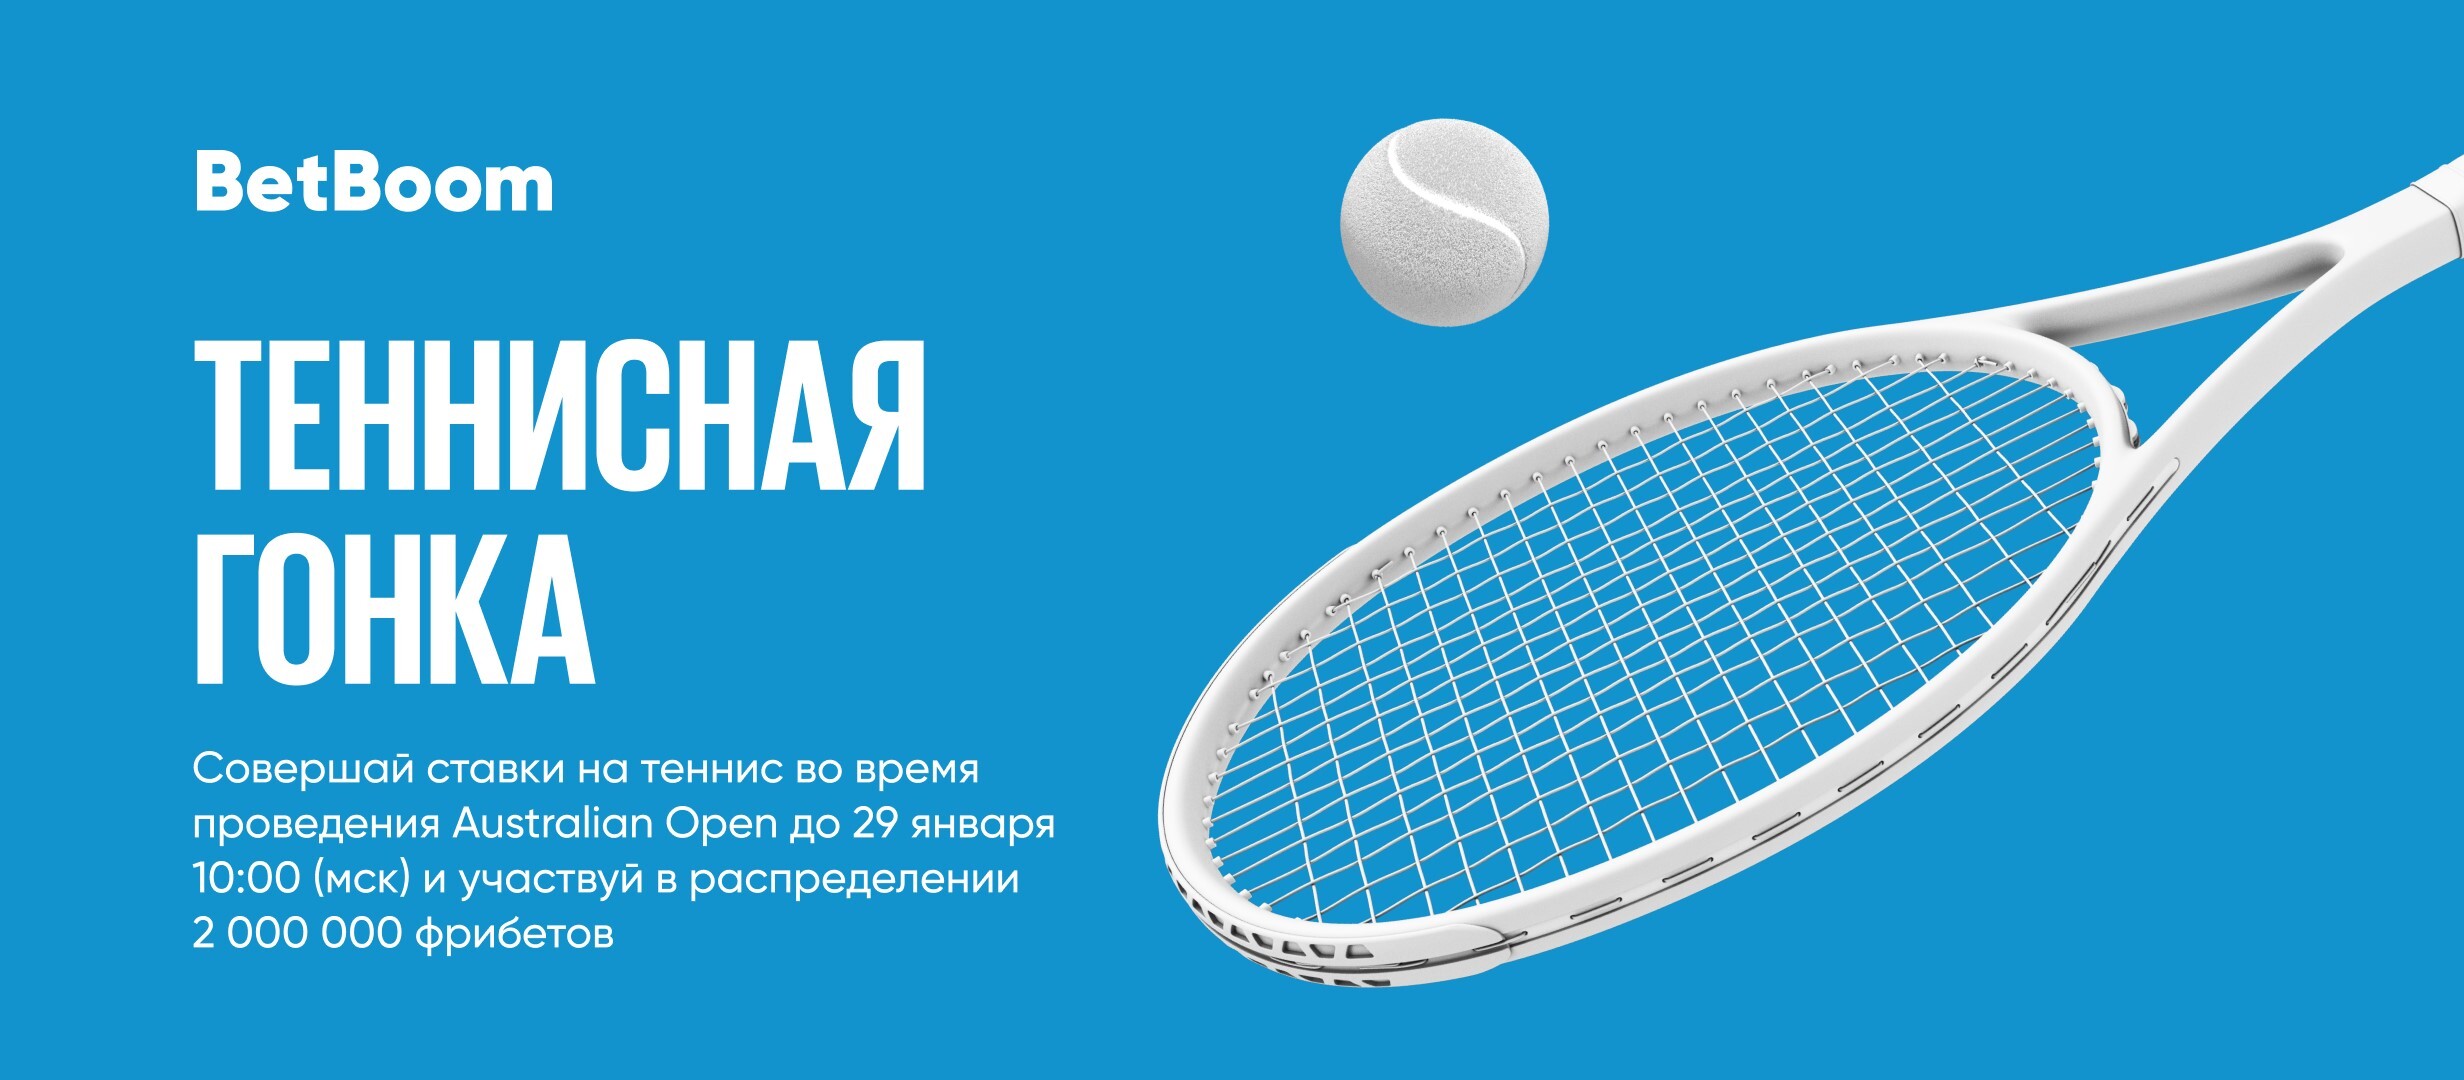 БК BetBoom начисляет фрибет до 175 000 рублей за ставки на теннис